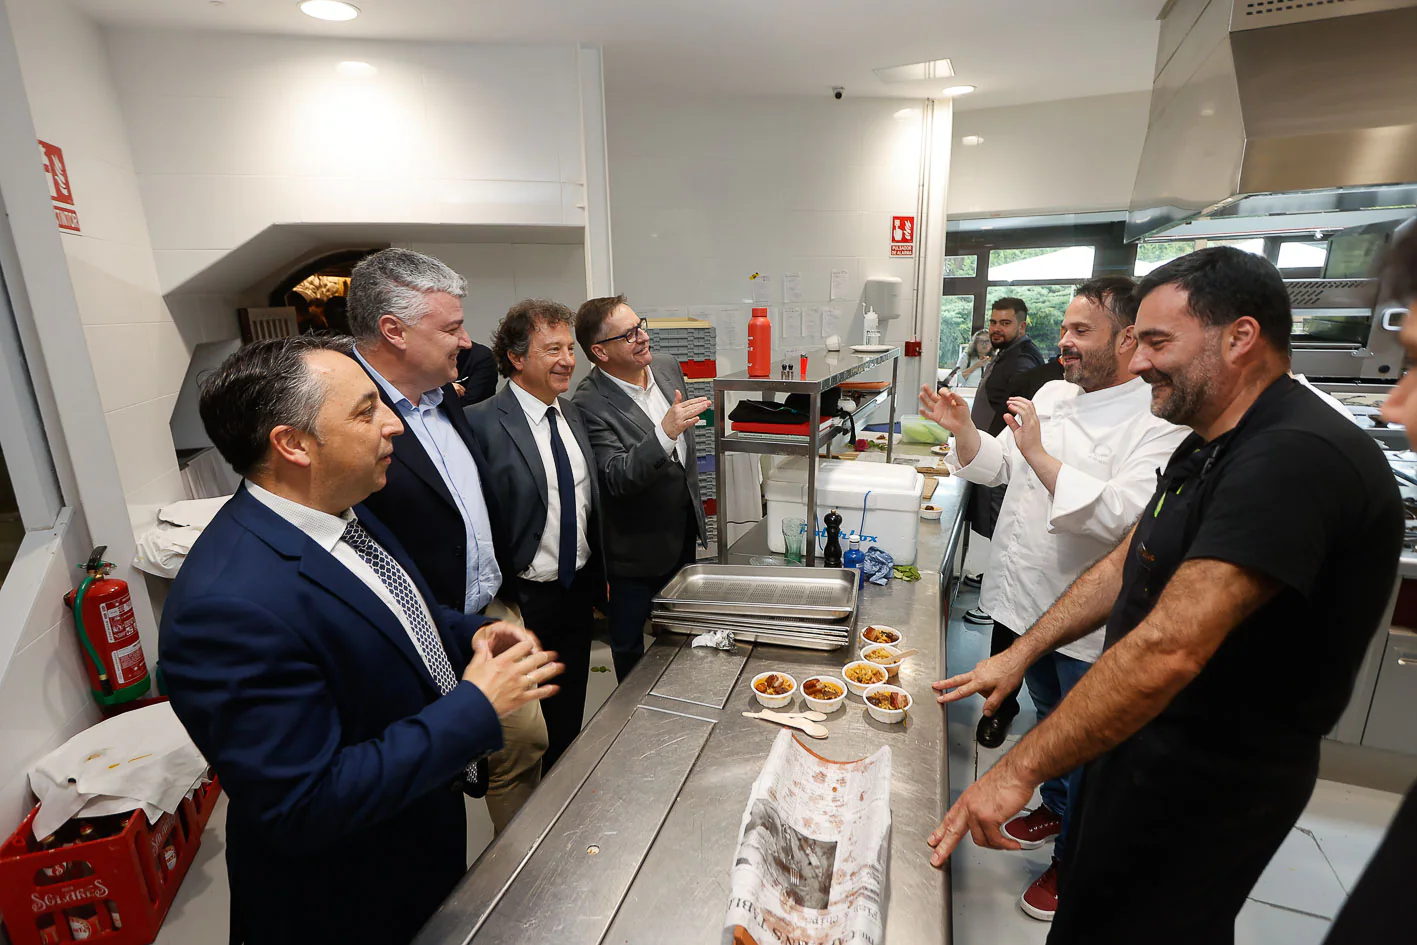 El consejero Pablo Palencia y el alcalde Carlos Caramés, junto con el director de El Diario, Íñigo Noriega, felicitaron a los cocineros tras el servicio.